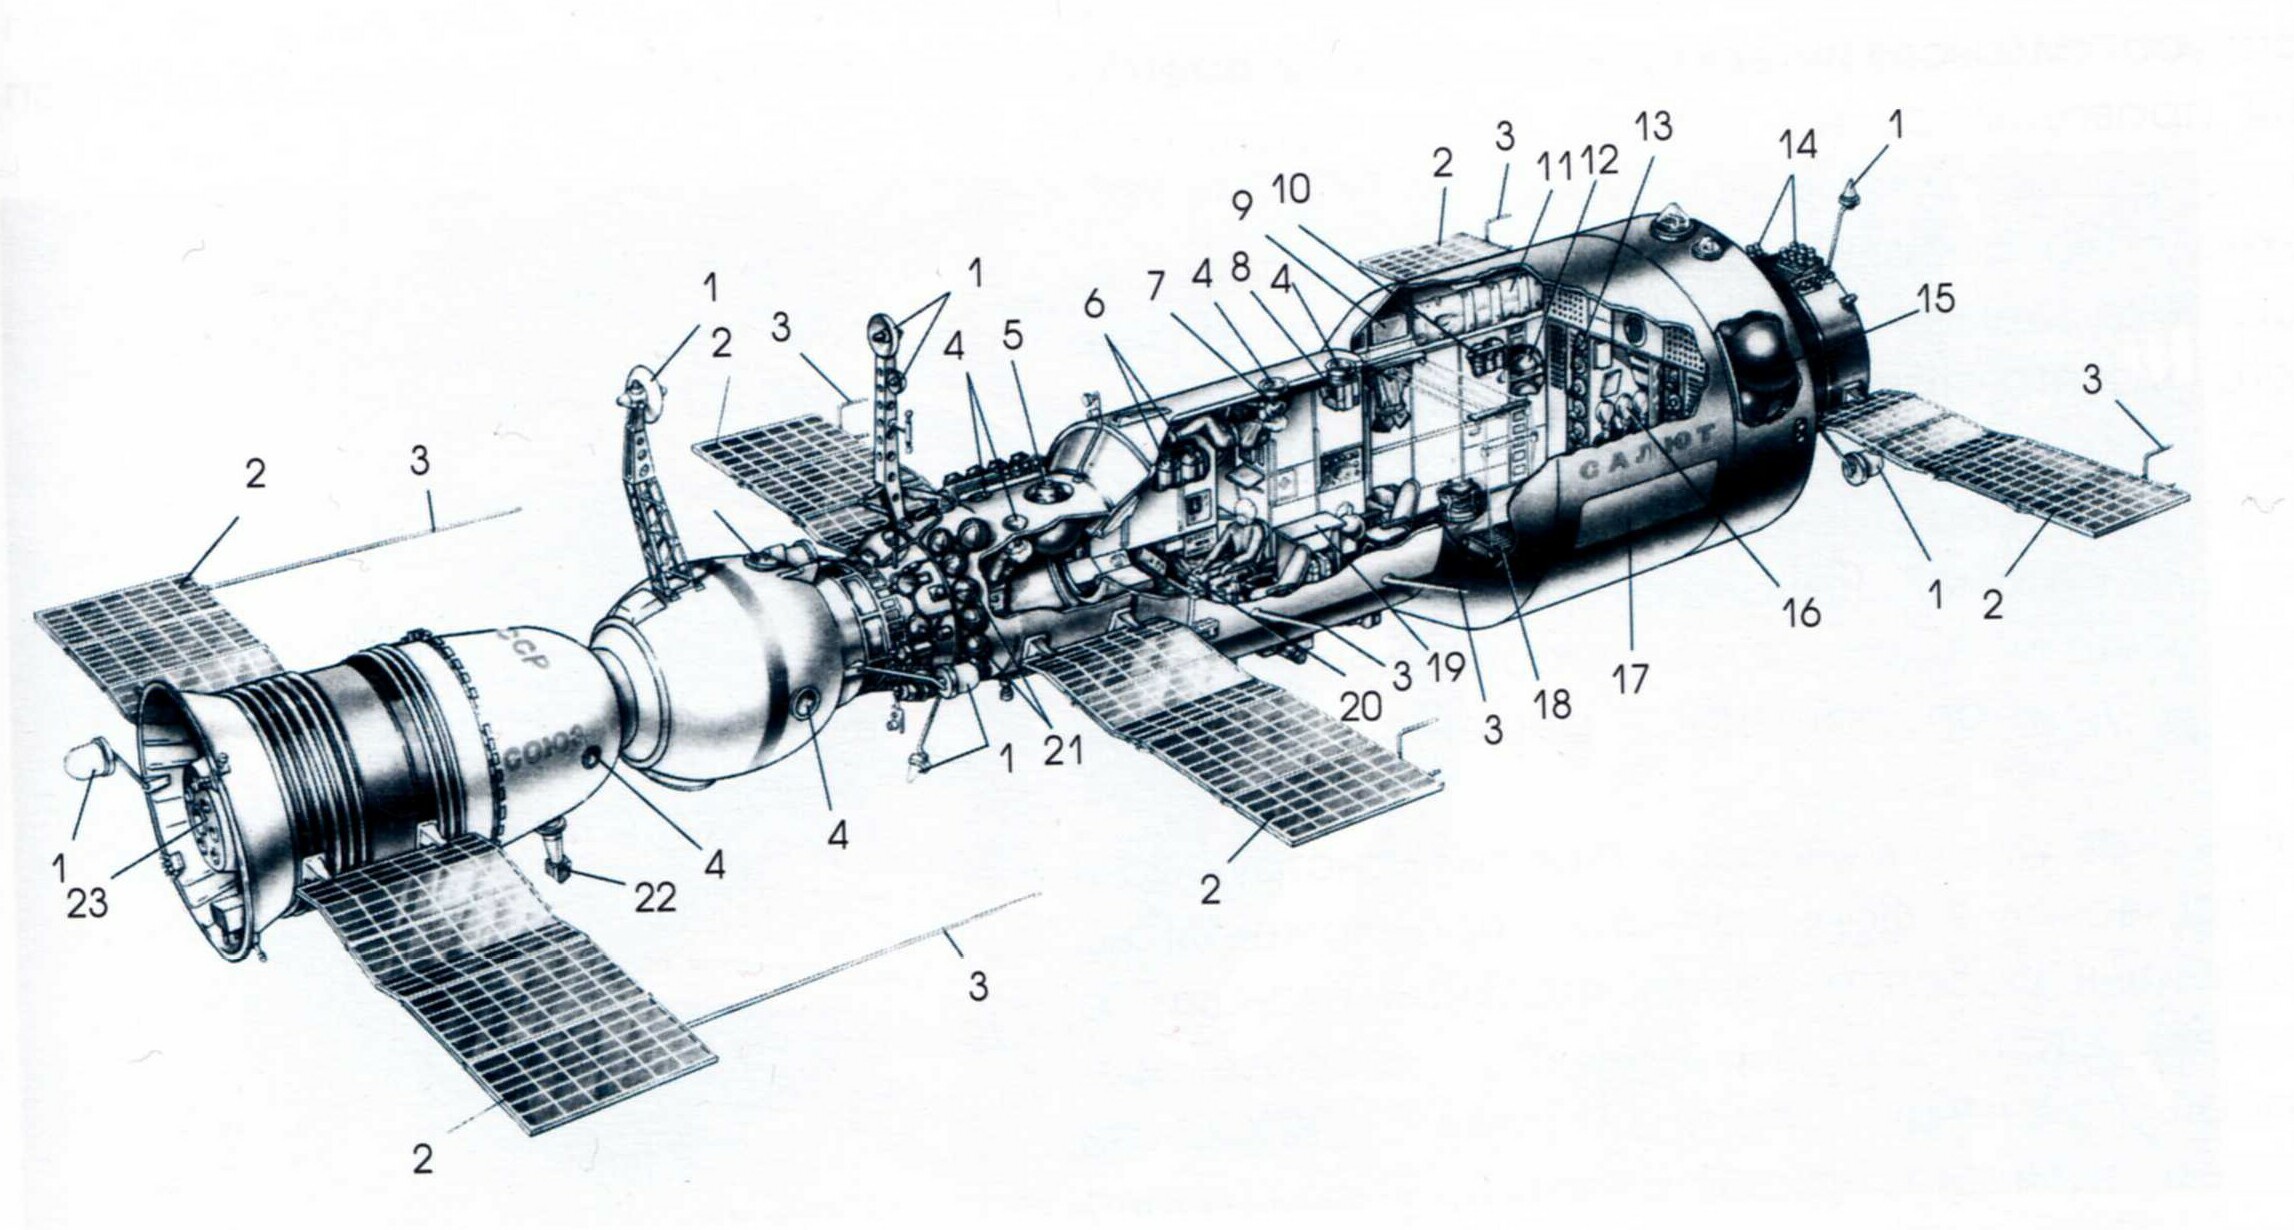 Saljut l s dopravní lodí Sojuz v realistické kresbě